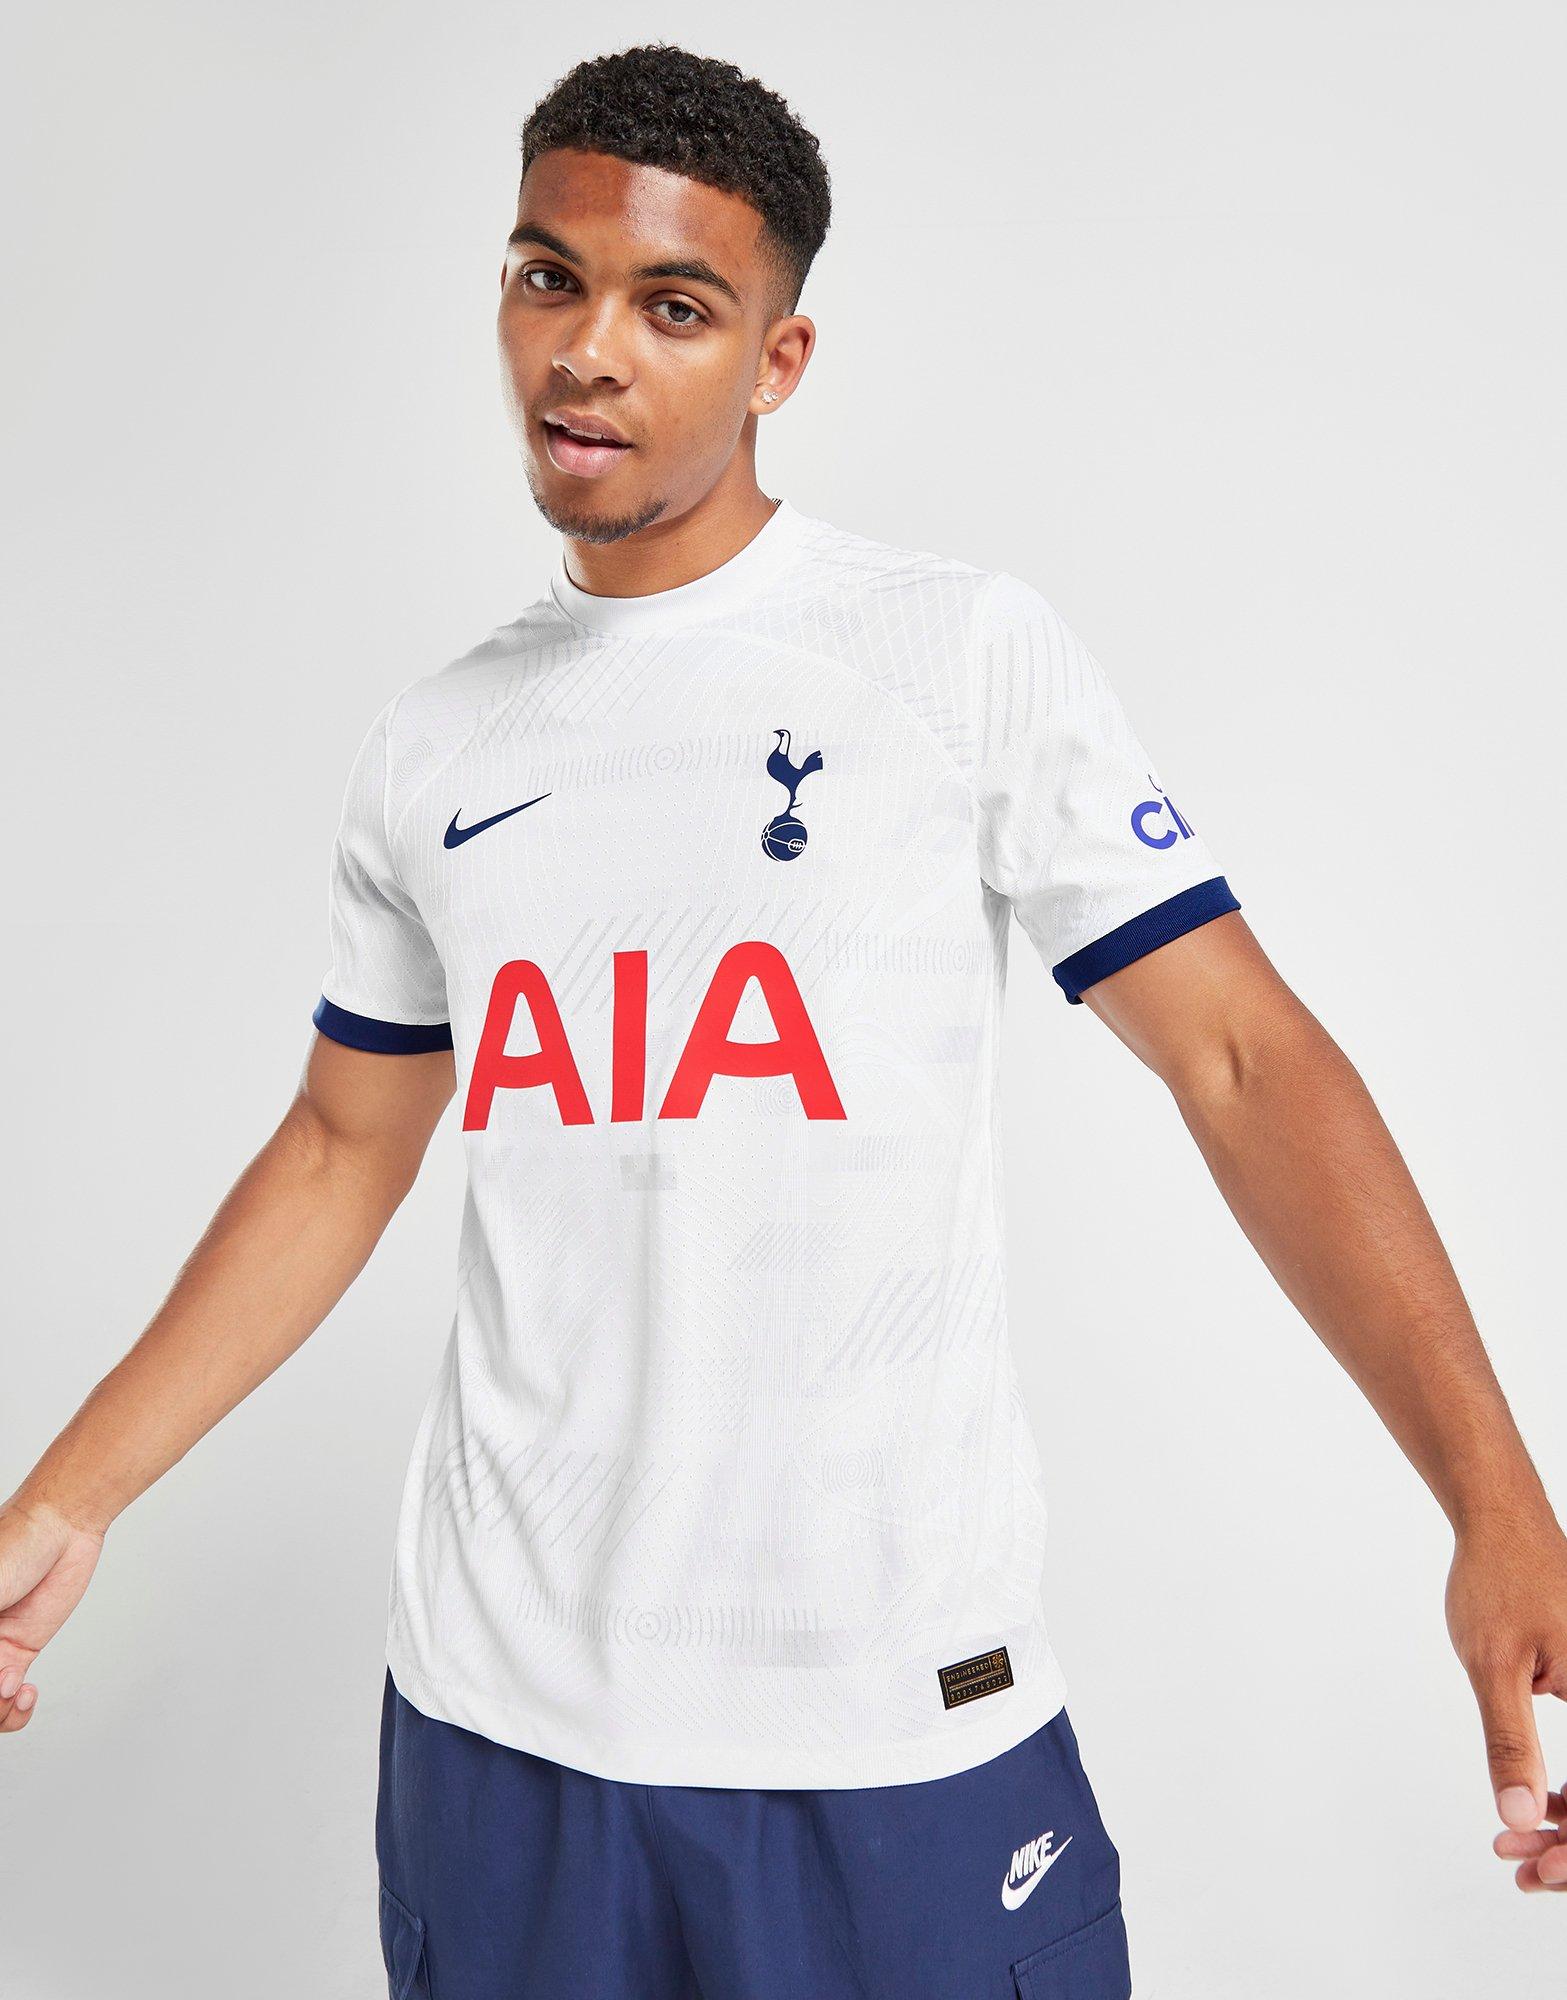 Tottenham Hotspur 2019-20 Nike Away Kit - Football Shirt Culture